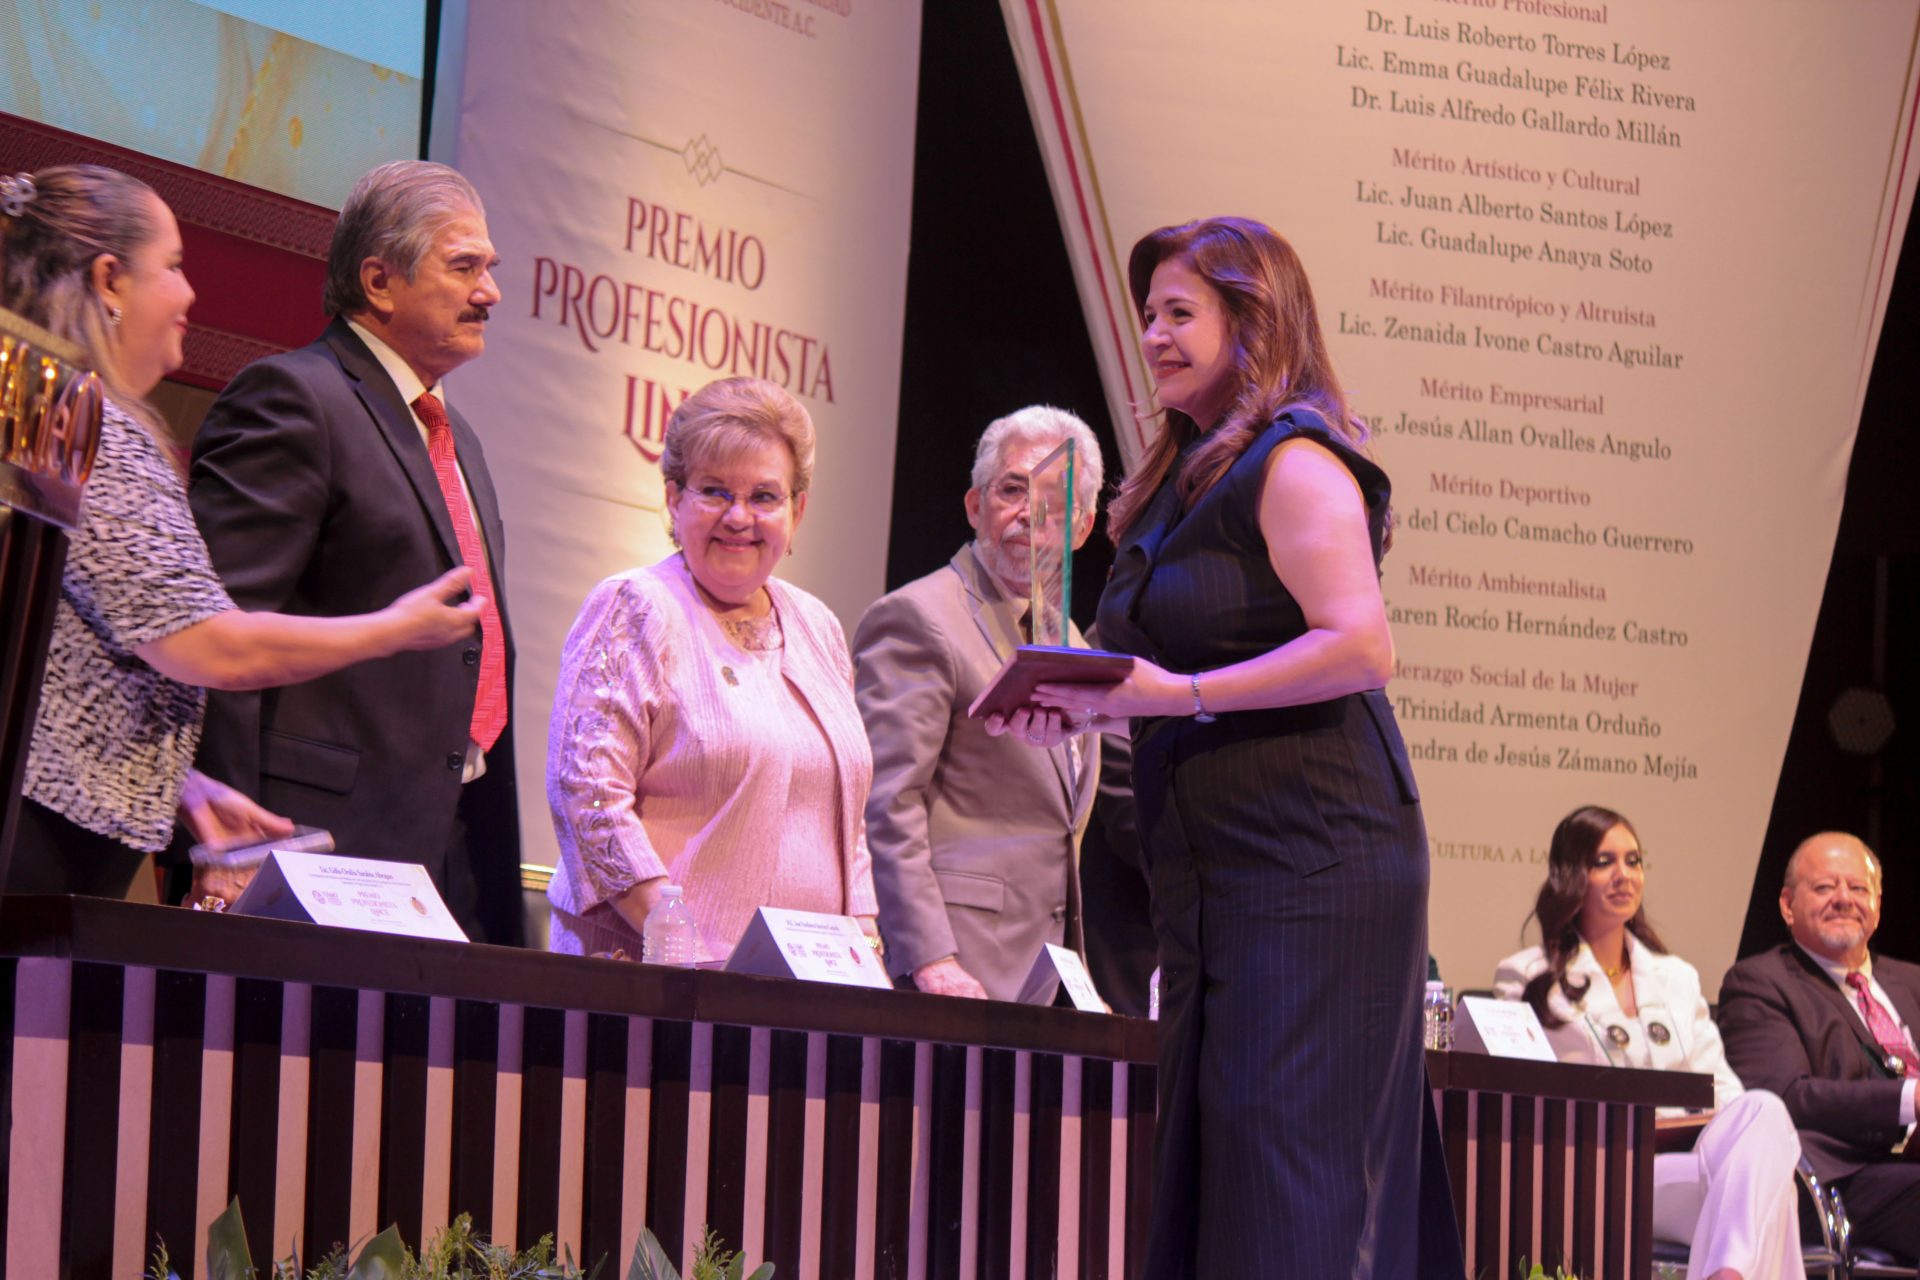 Lic. Emma Guadalupe Félix Rivera, recibe Galardón en la ceremonia del “Premio Profesionista Lince del año”